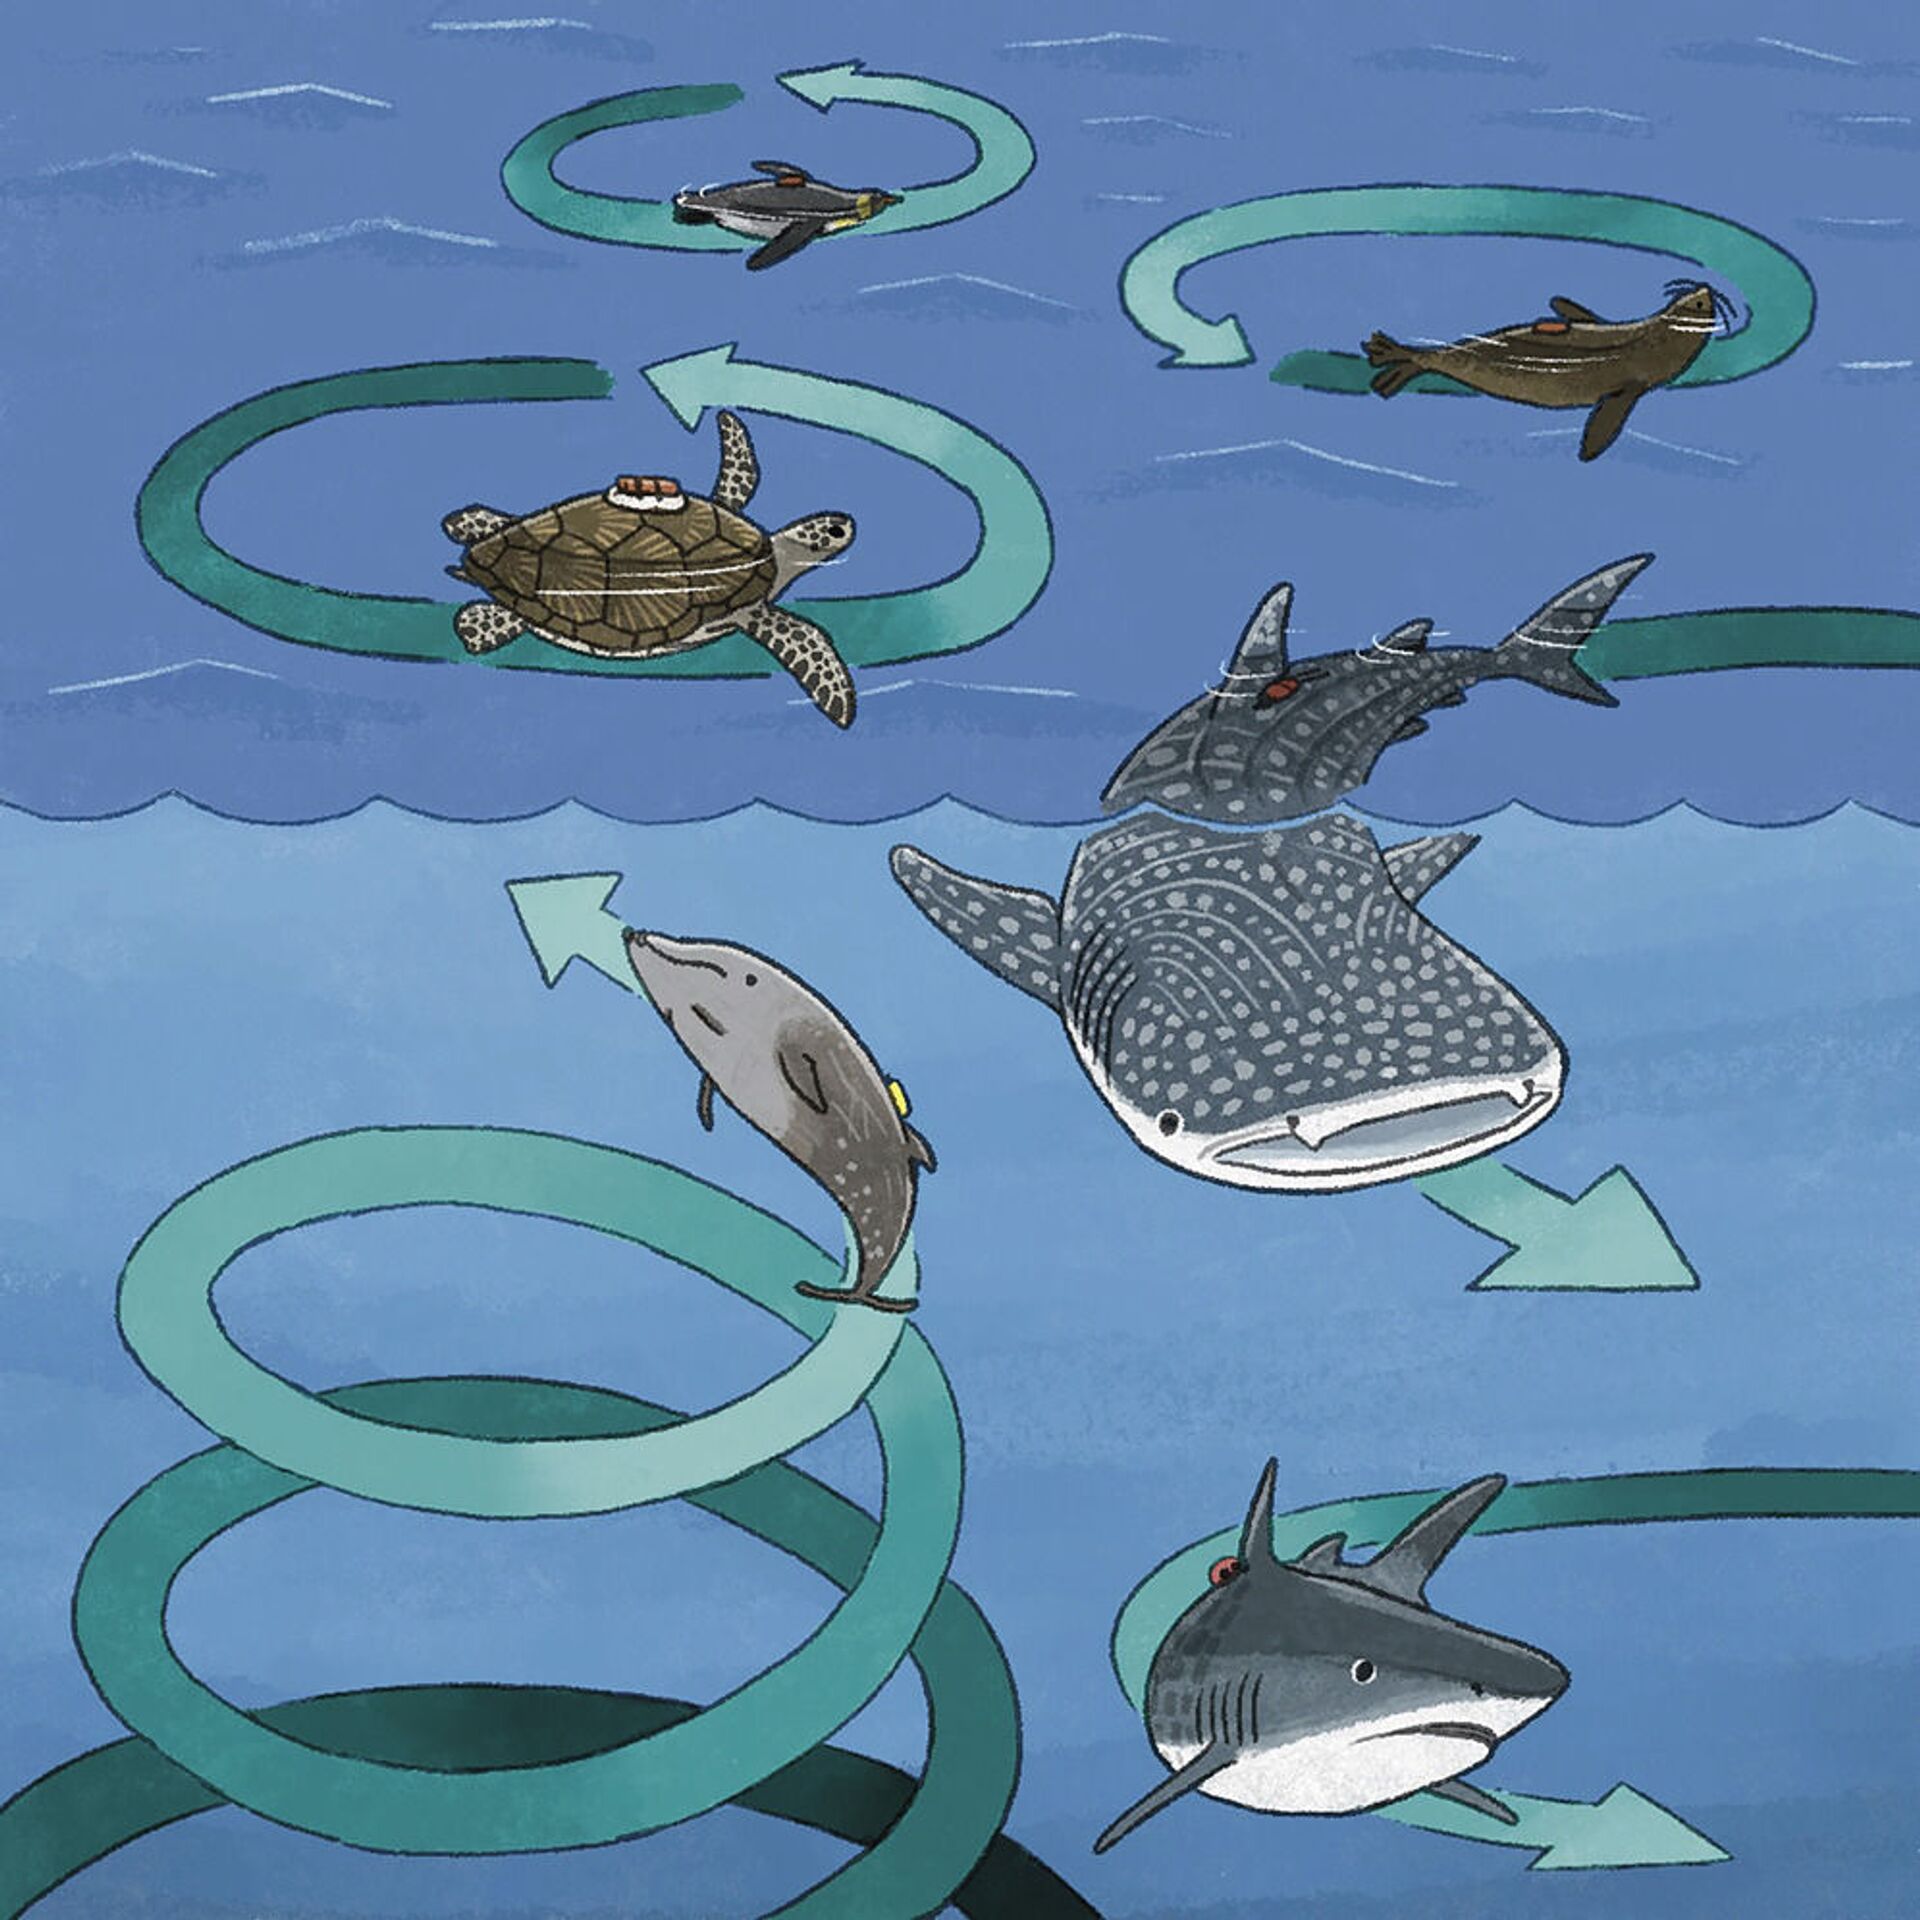 Enigmático movimento em círculo capturado em tubarões, pinguins e tartarugas (IMAGEM) - Sputnik Brasil, 1920, 19.03.2021